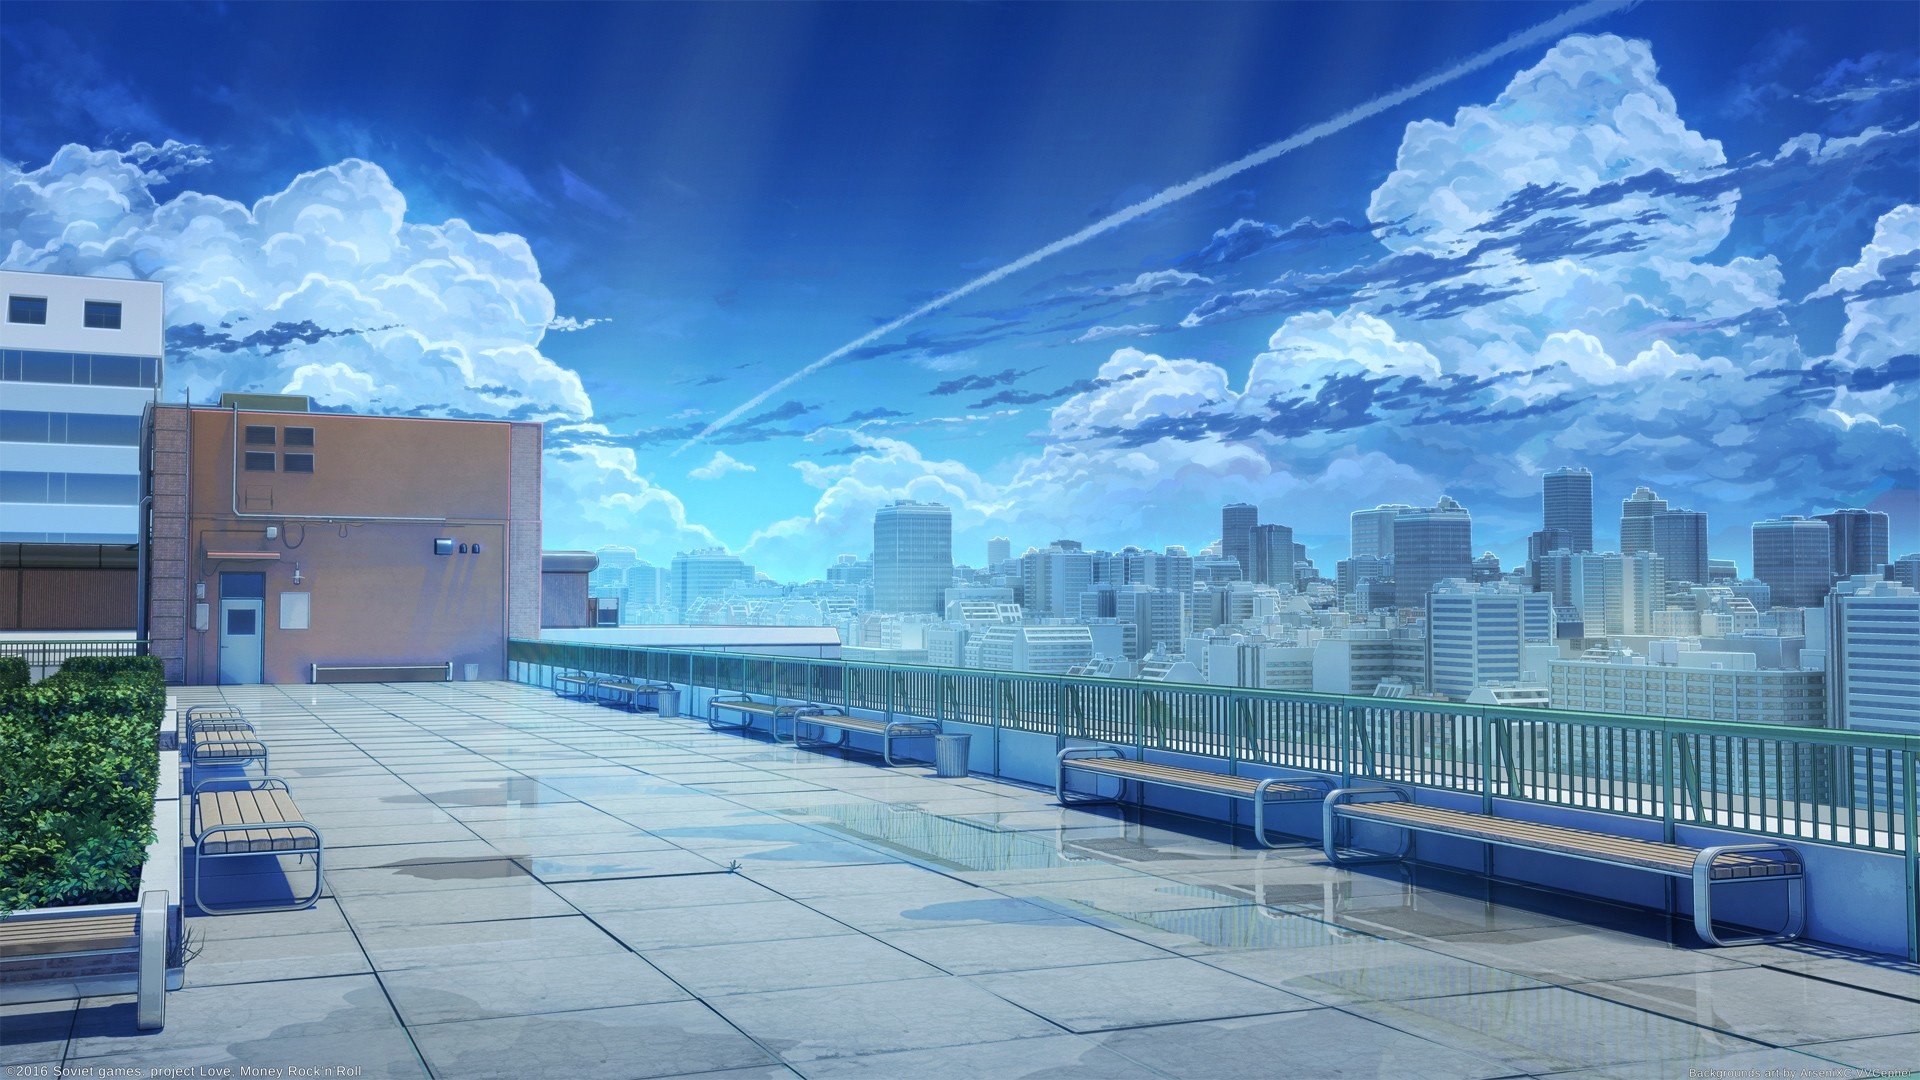 rooftops, School, Games art, Backgound, Anime art Wallpaper